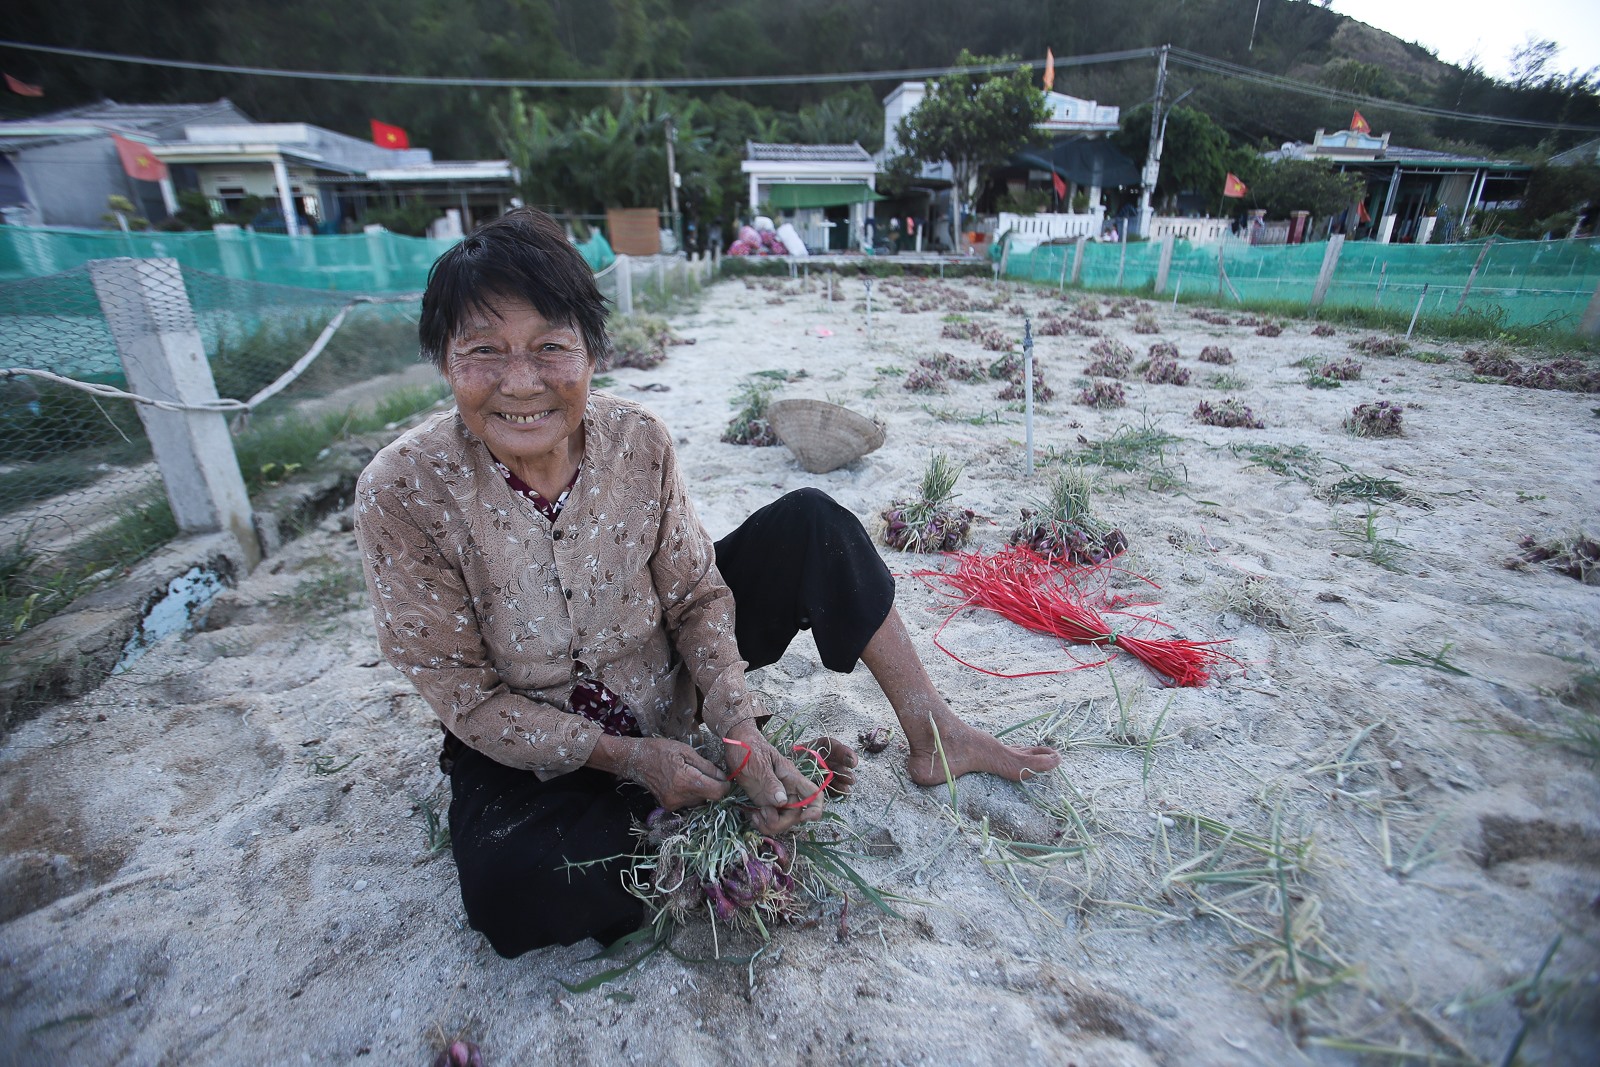 Cụ Phi đã 80 tuổi nhưng vẫn phụ con gái thu hoạch hành. Phía dưới lớp cát trắng là những củ hành tím, chỉ cần dùng tay nhổ nhẹ cũng sẽ bật lên.